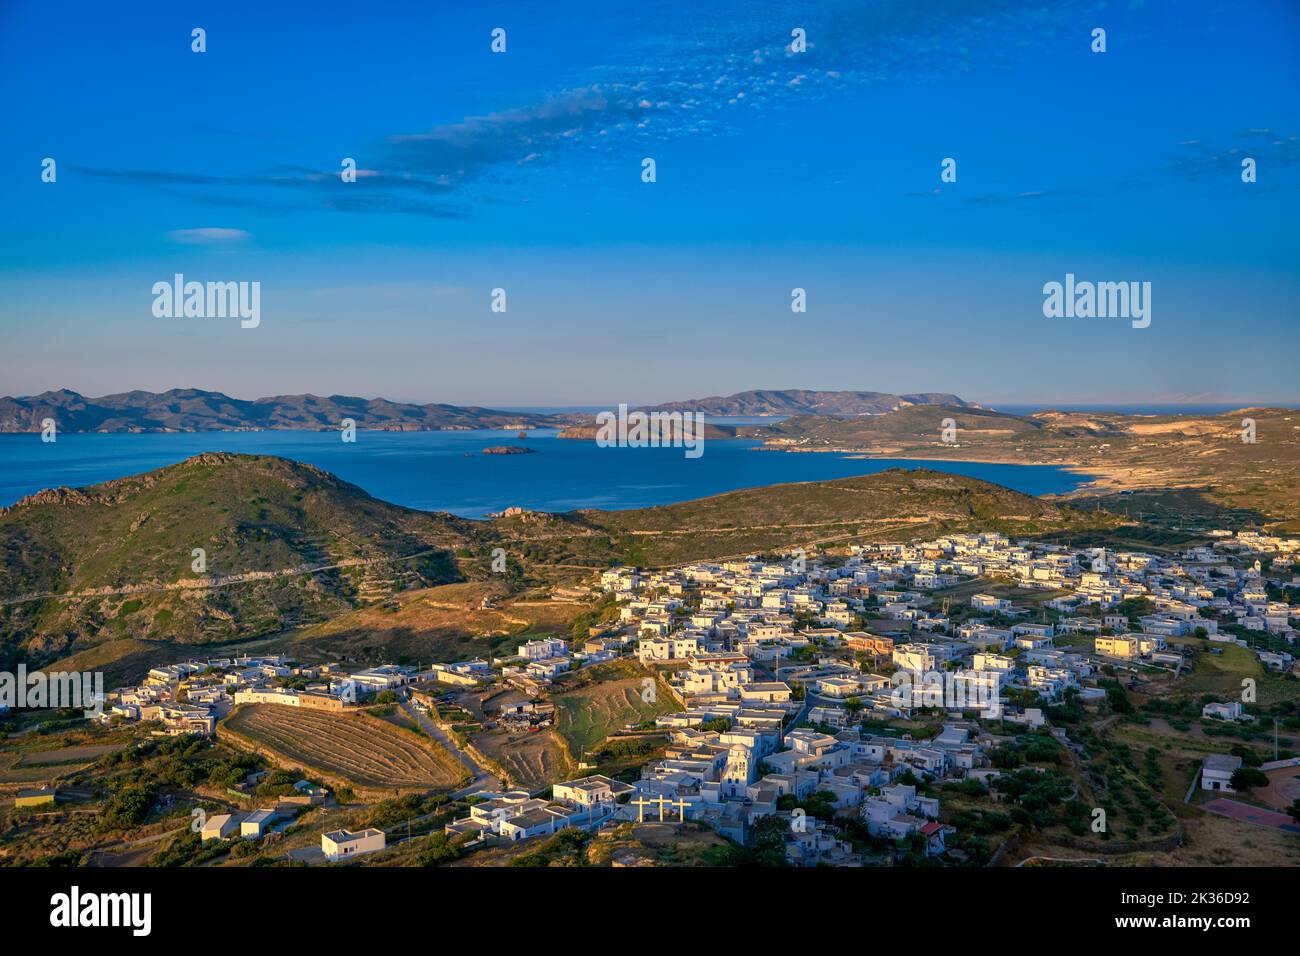 Belle vue sur la ville grecque typique, la baie et les villages sur l'île au coucher du soleil, Grèce. Maisons blanchies à la chaux, collines verdoyantes, soleil bas, mer bleue, ciel clair Banque D'Images